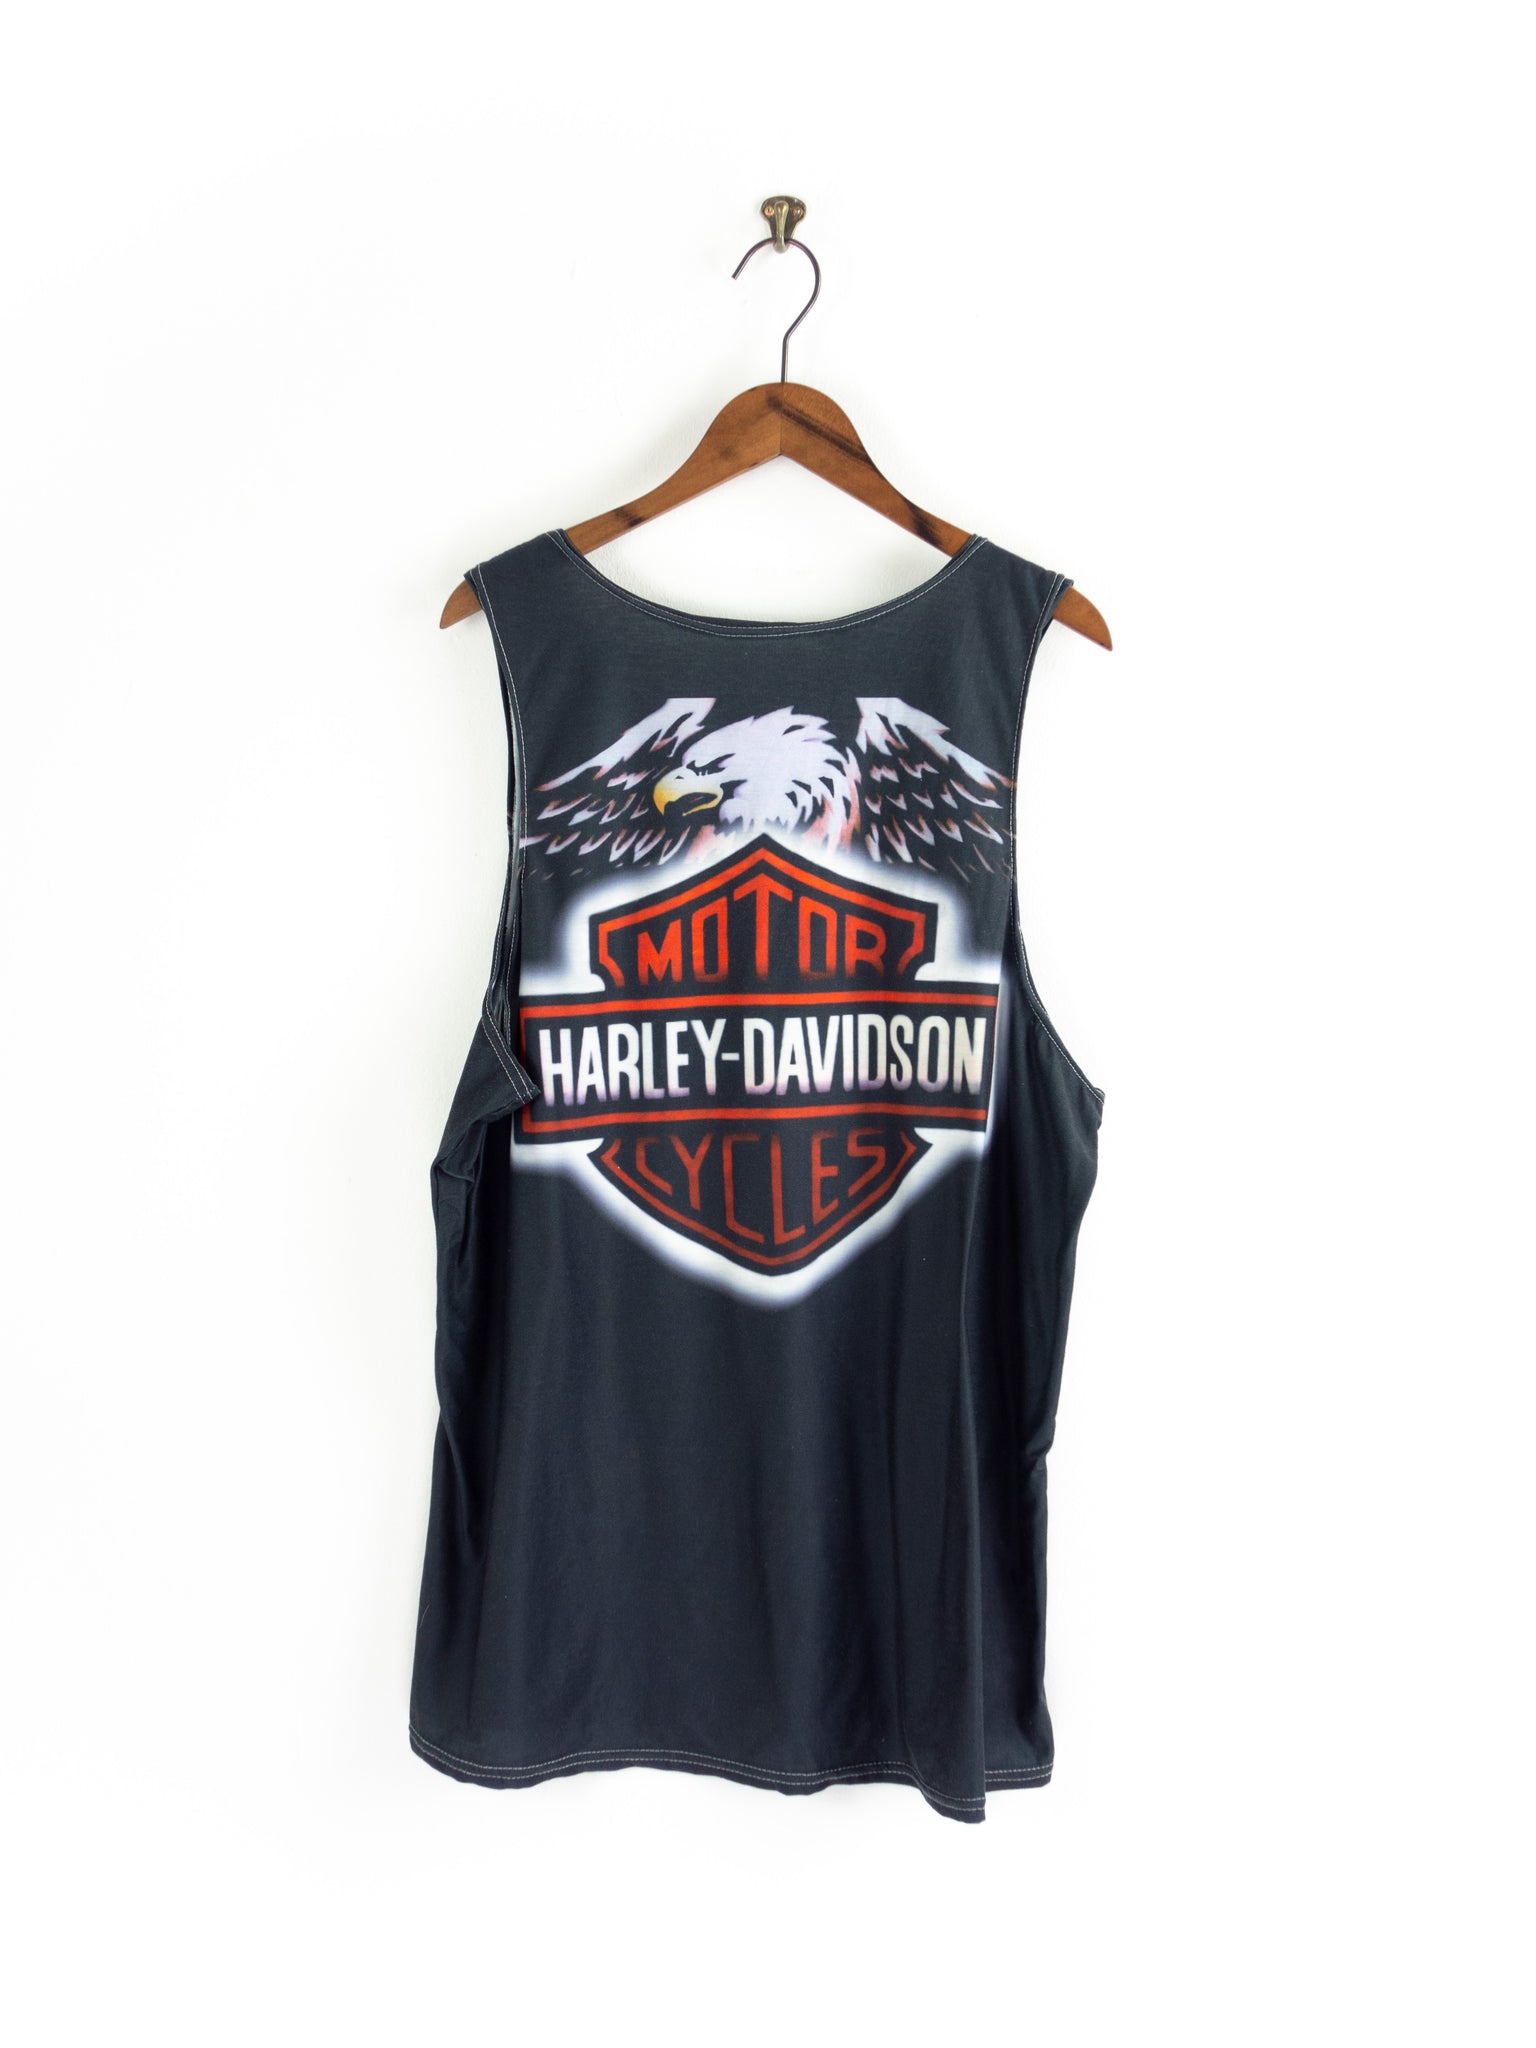 Harley-Davidson Shirt in L/XL